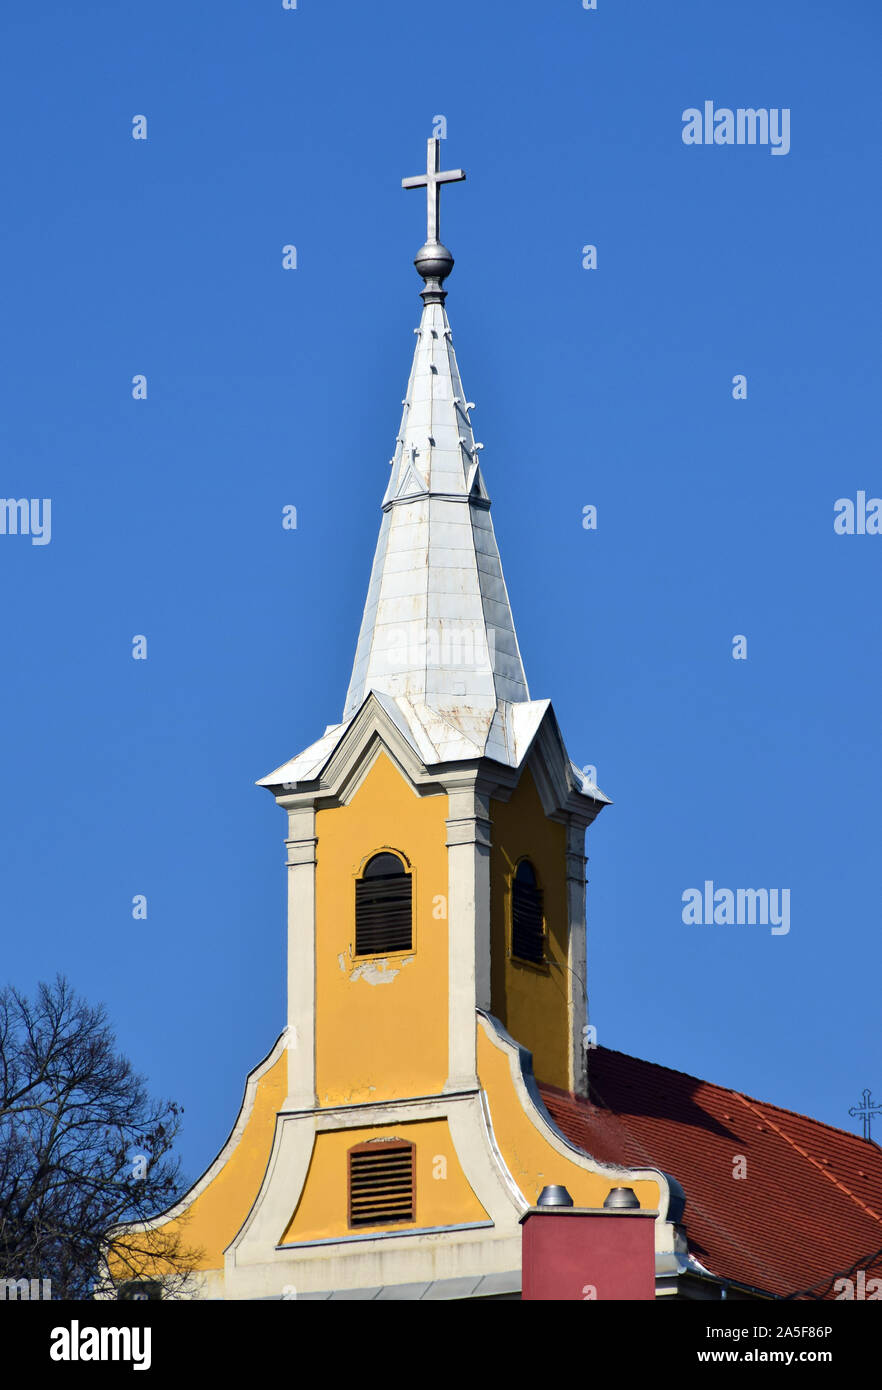 St. Andrew's Römisch-katholische Kirche, Verőce, Komitat Pest, Ungarn, Magyarország, Europa, Szent Andras romai katolikus templom Stockfoto